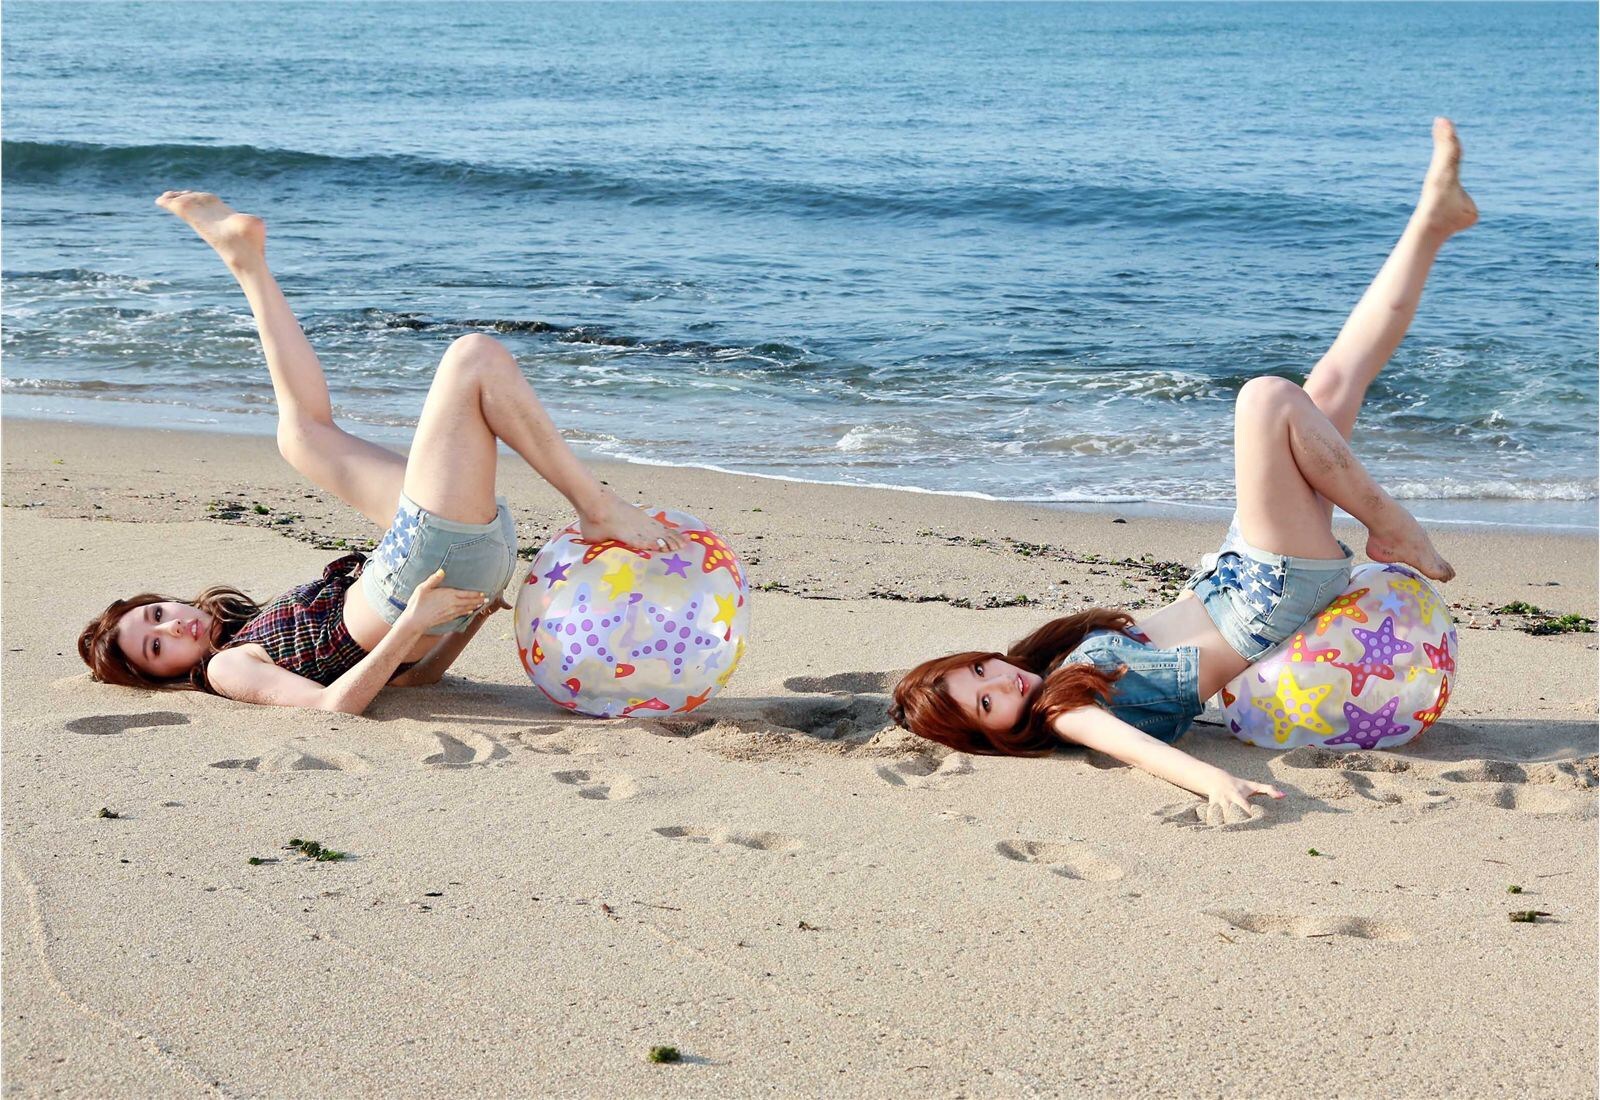 性感可爱的“白”氏双胞胎女子演唱组合BY2 - Miko (白纬芬) & Yumi(白纬玲) 写真套图